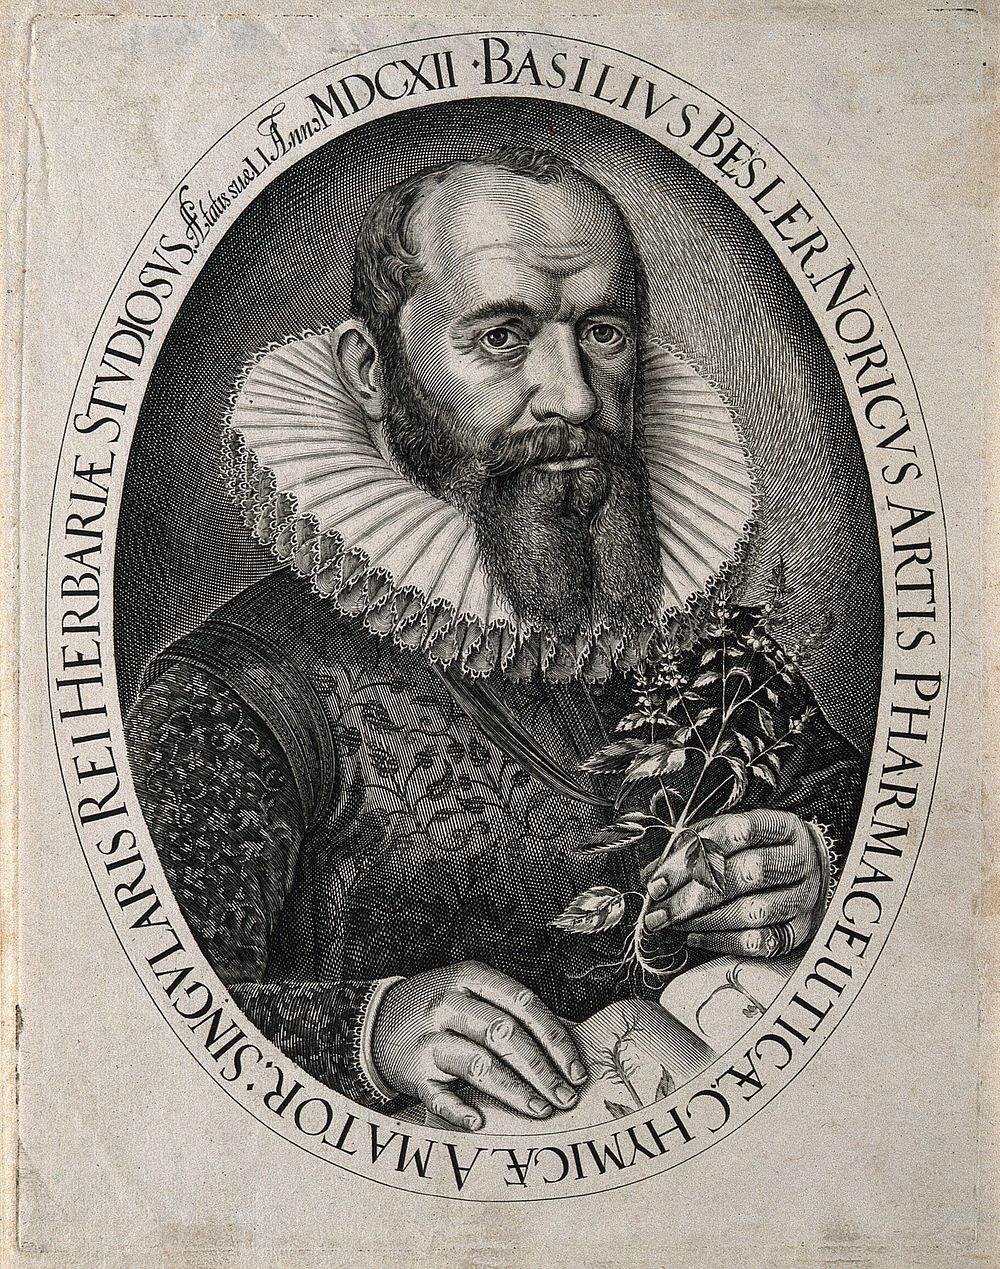 Basilius Besler. Line engraving by J. Leypolt, 1612.